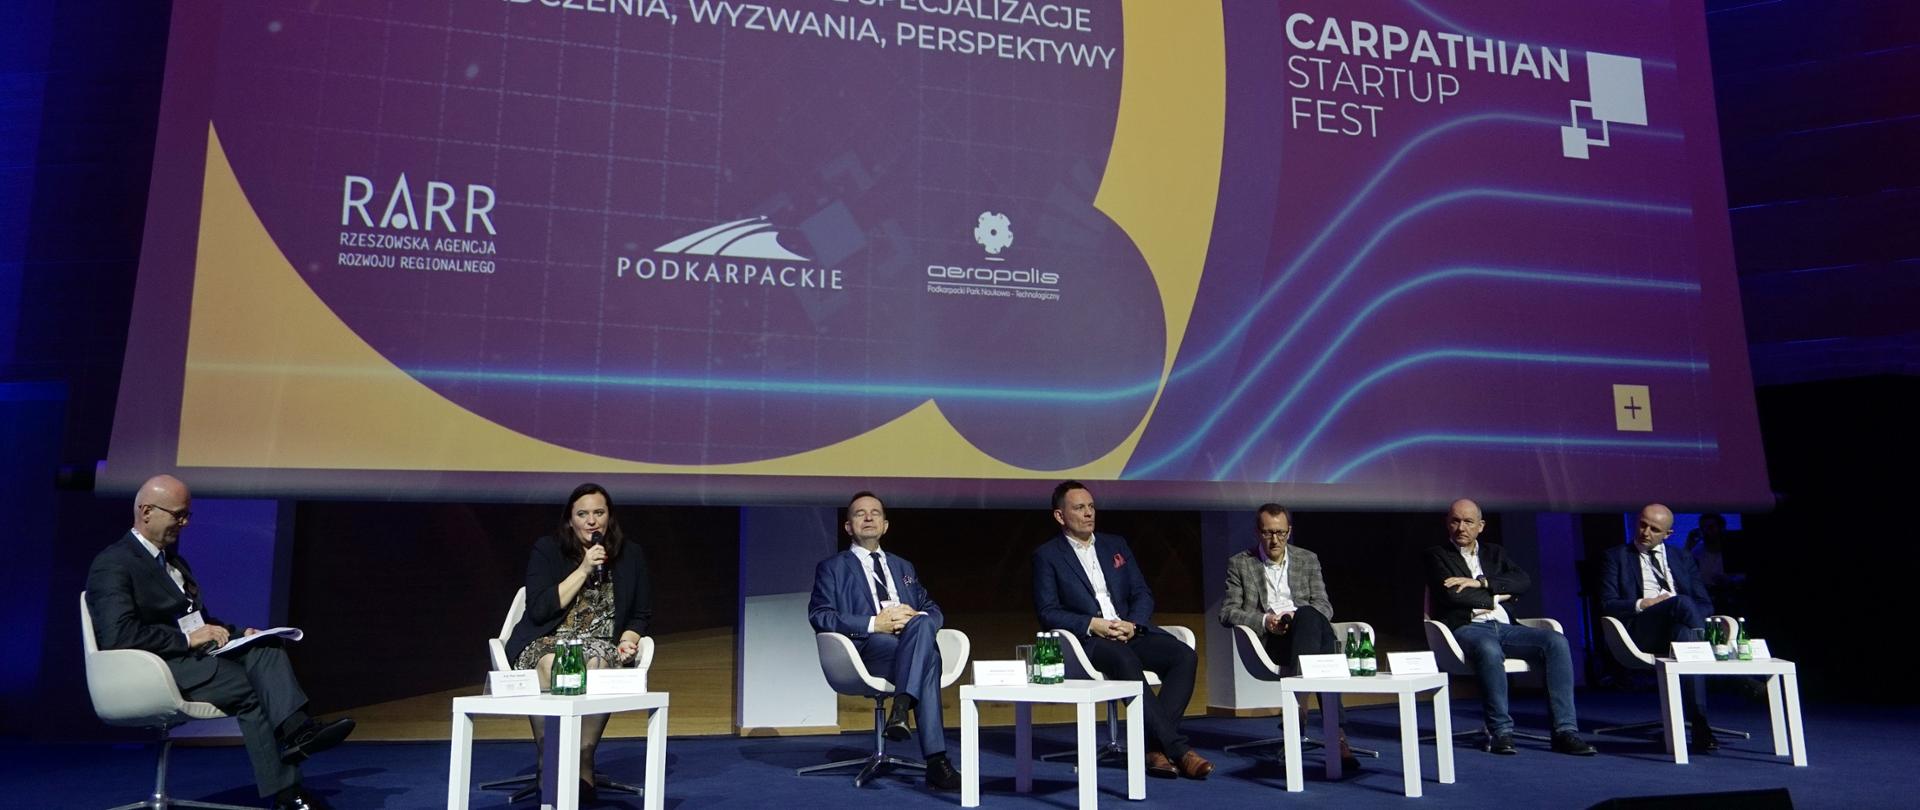 Grupa osób siedzi na scenie podczas panelu wśród nich minister Jarosińska-Jedynak